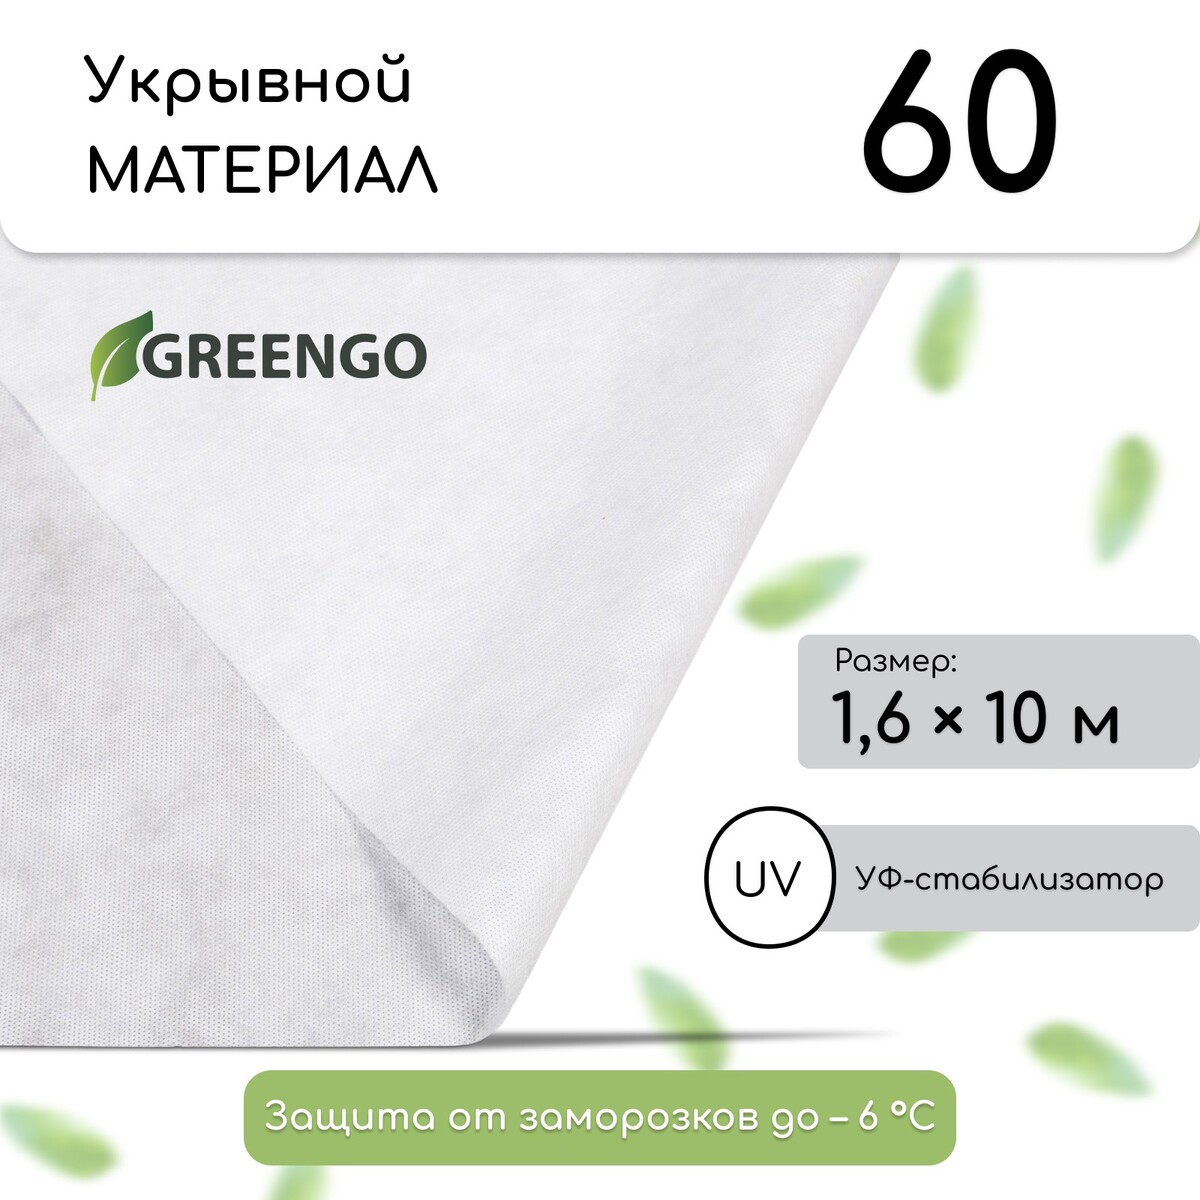 Материал укрывной, 10 × 1,6 м, плотность 60 г/м², спанбонд с уф-стабилизатором, белый, greengo, эконом 20%